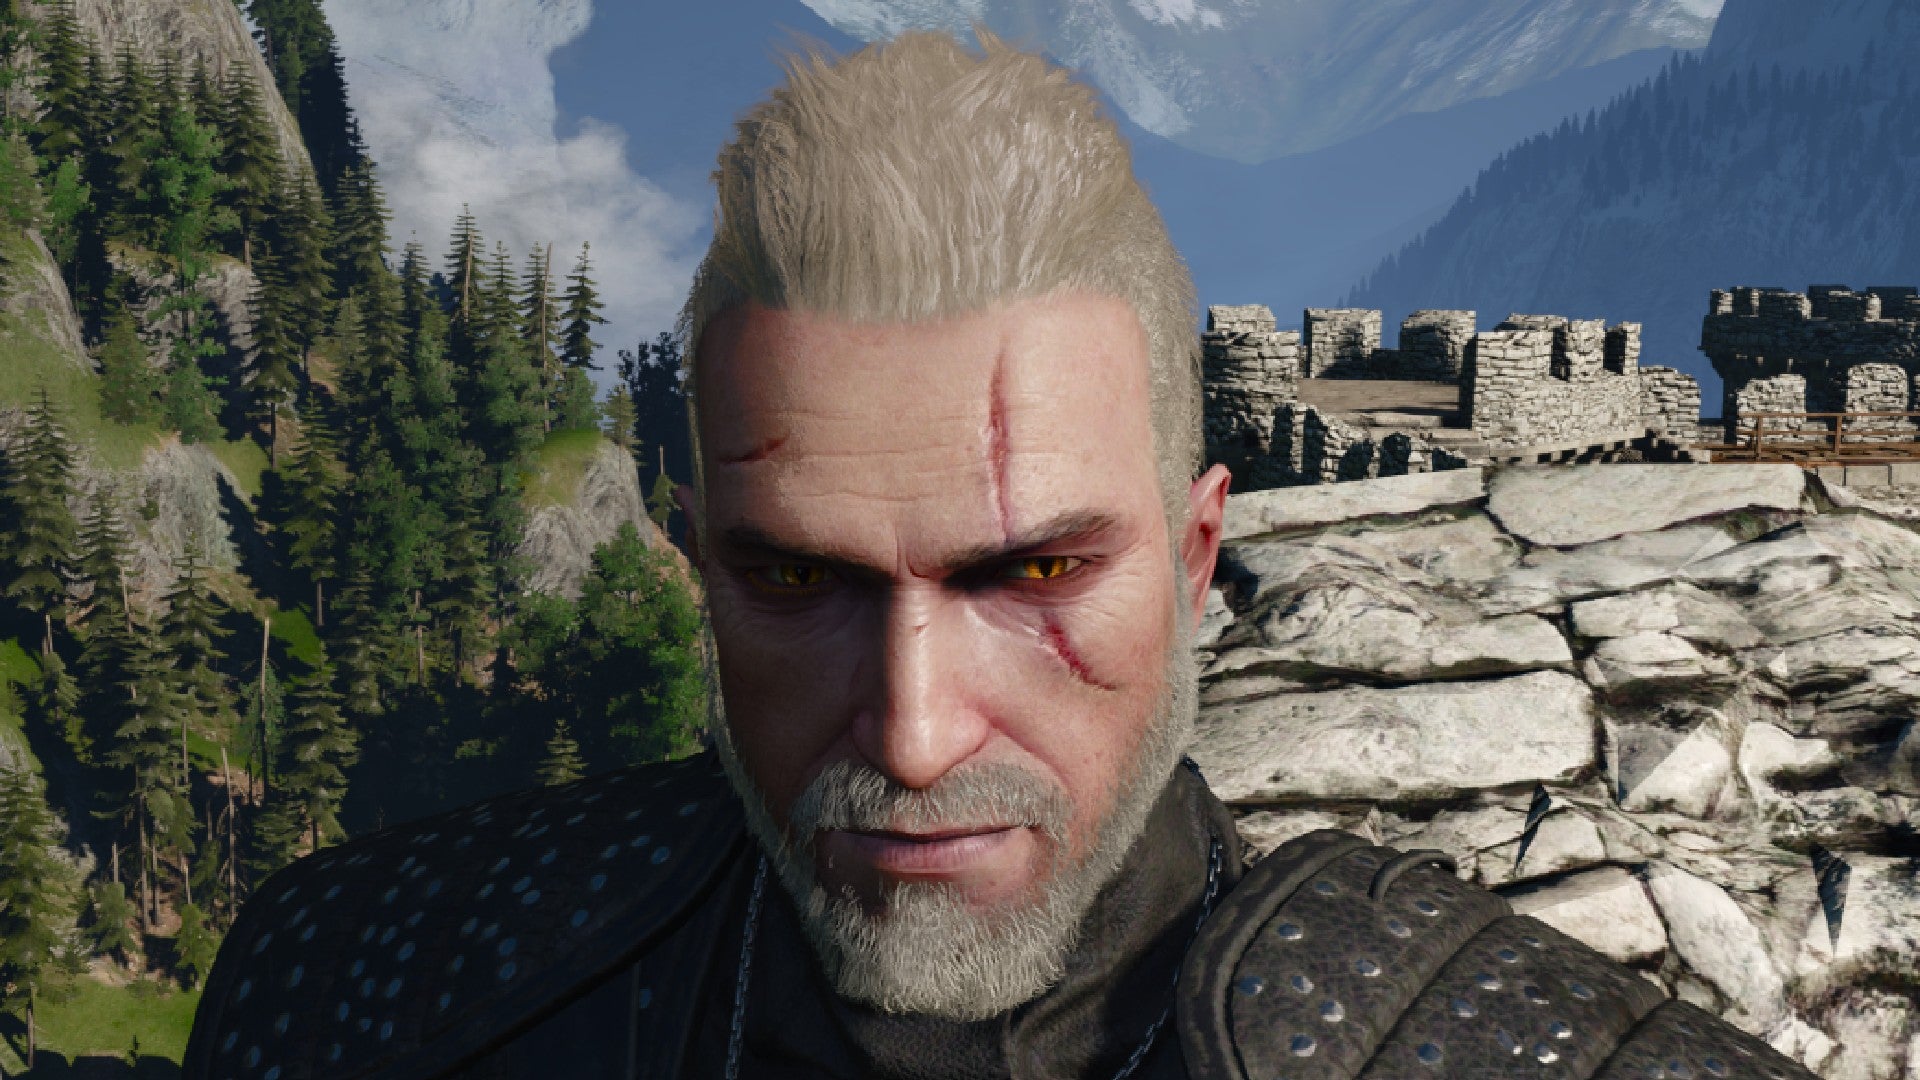 Captura de pantalla de Witcher 3 que muestra el corte de pelo mohawk y cola de caballo de Geralt desde el frente.